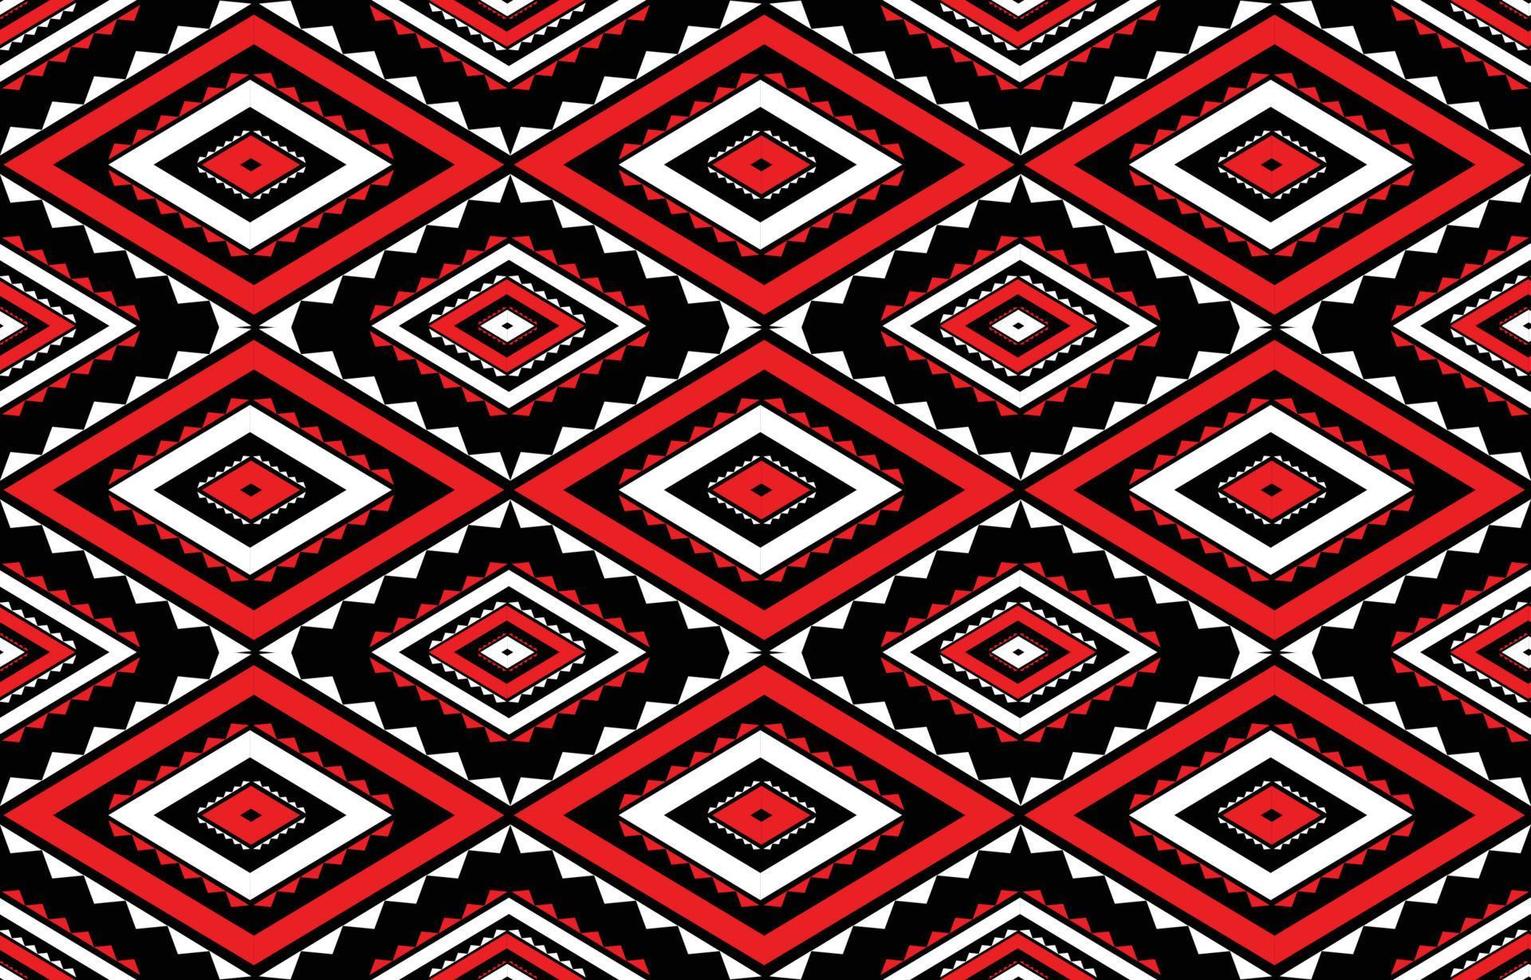 padrão nativo têxteis tribais tradicionais abstraem padrão étnico geométrico. design para plano de fundo ou papel de parede, tapete, batik, roupas, pano, ilustração vetorial. vetor